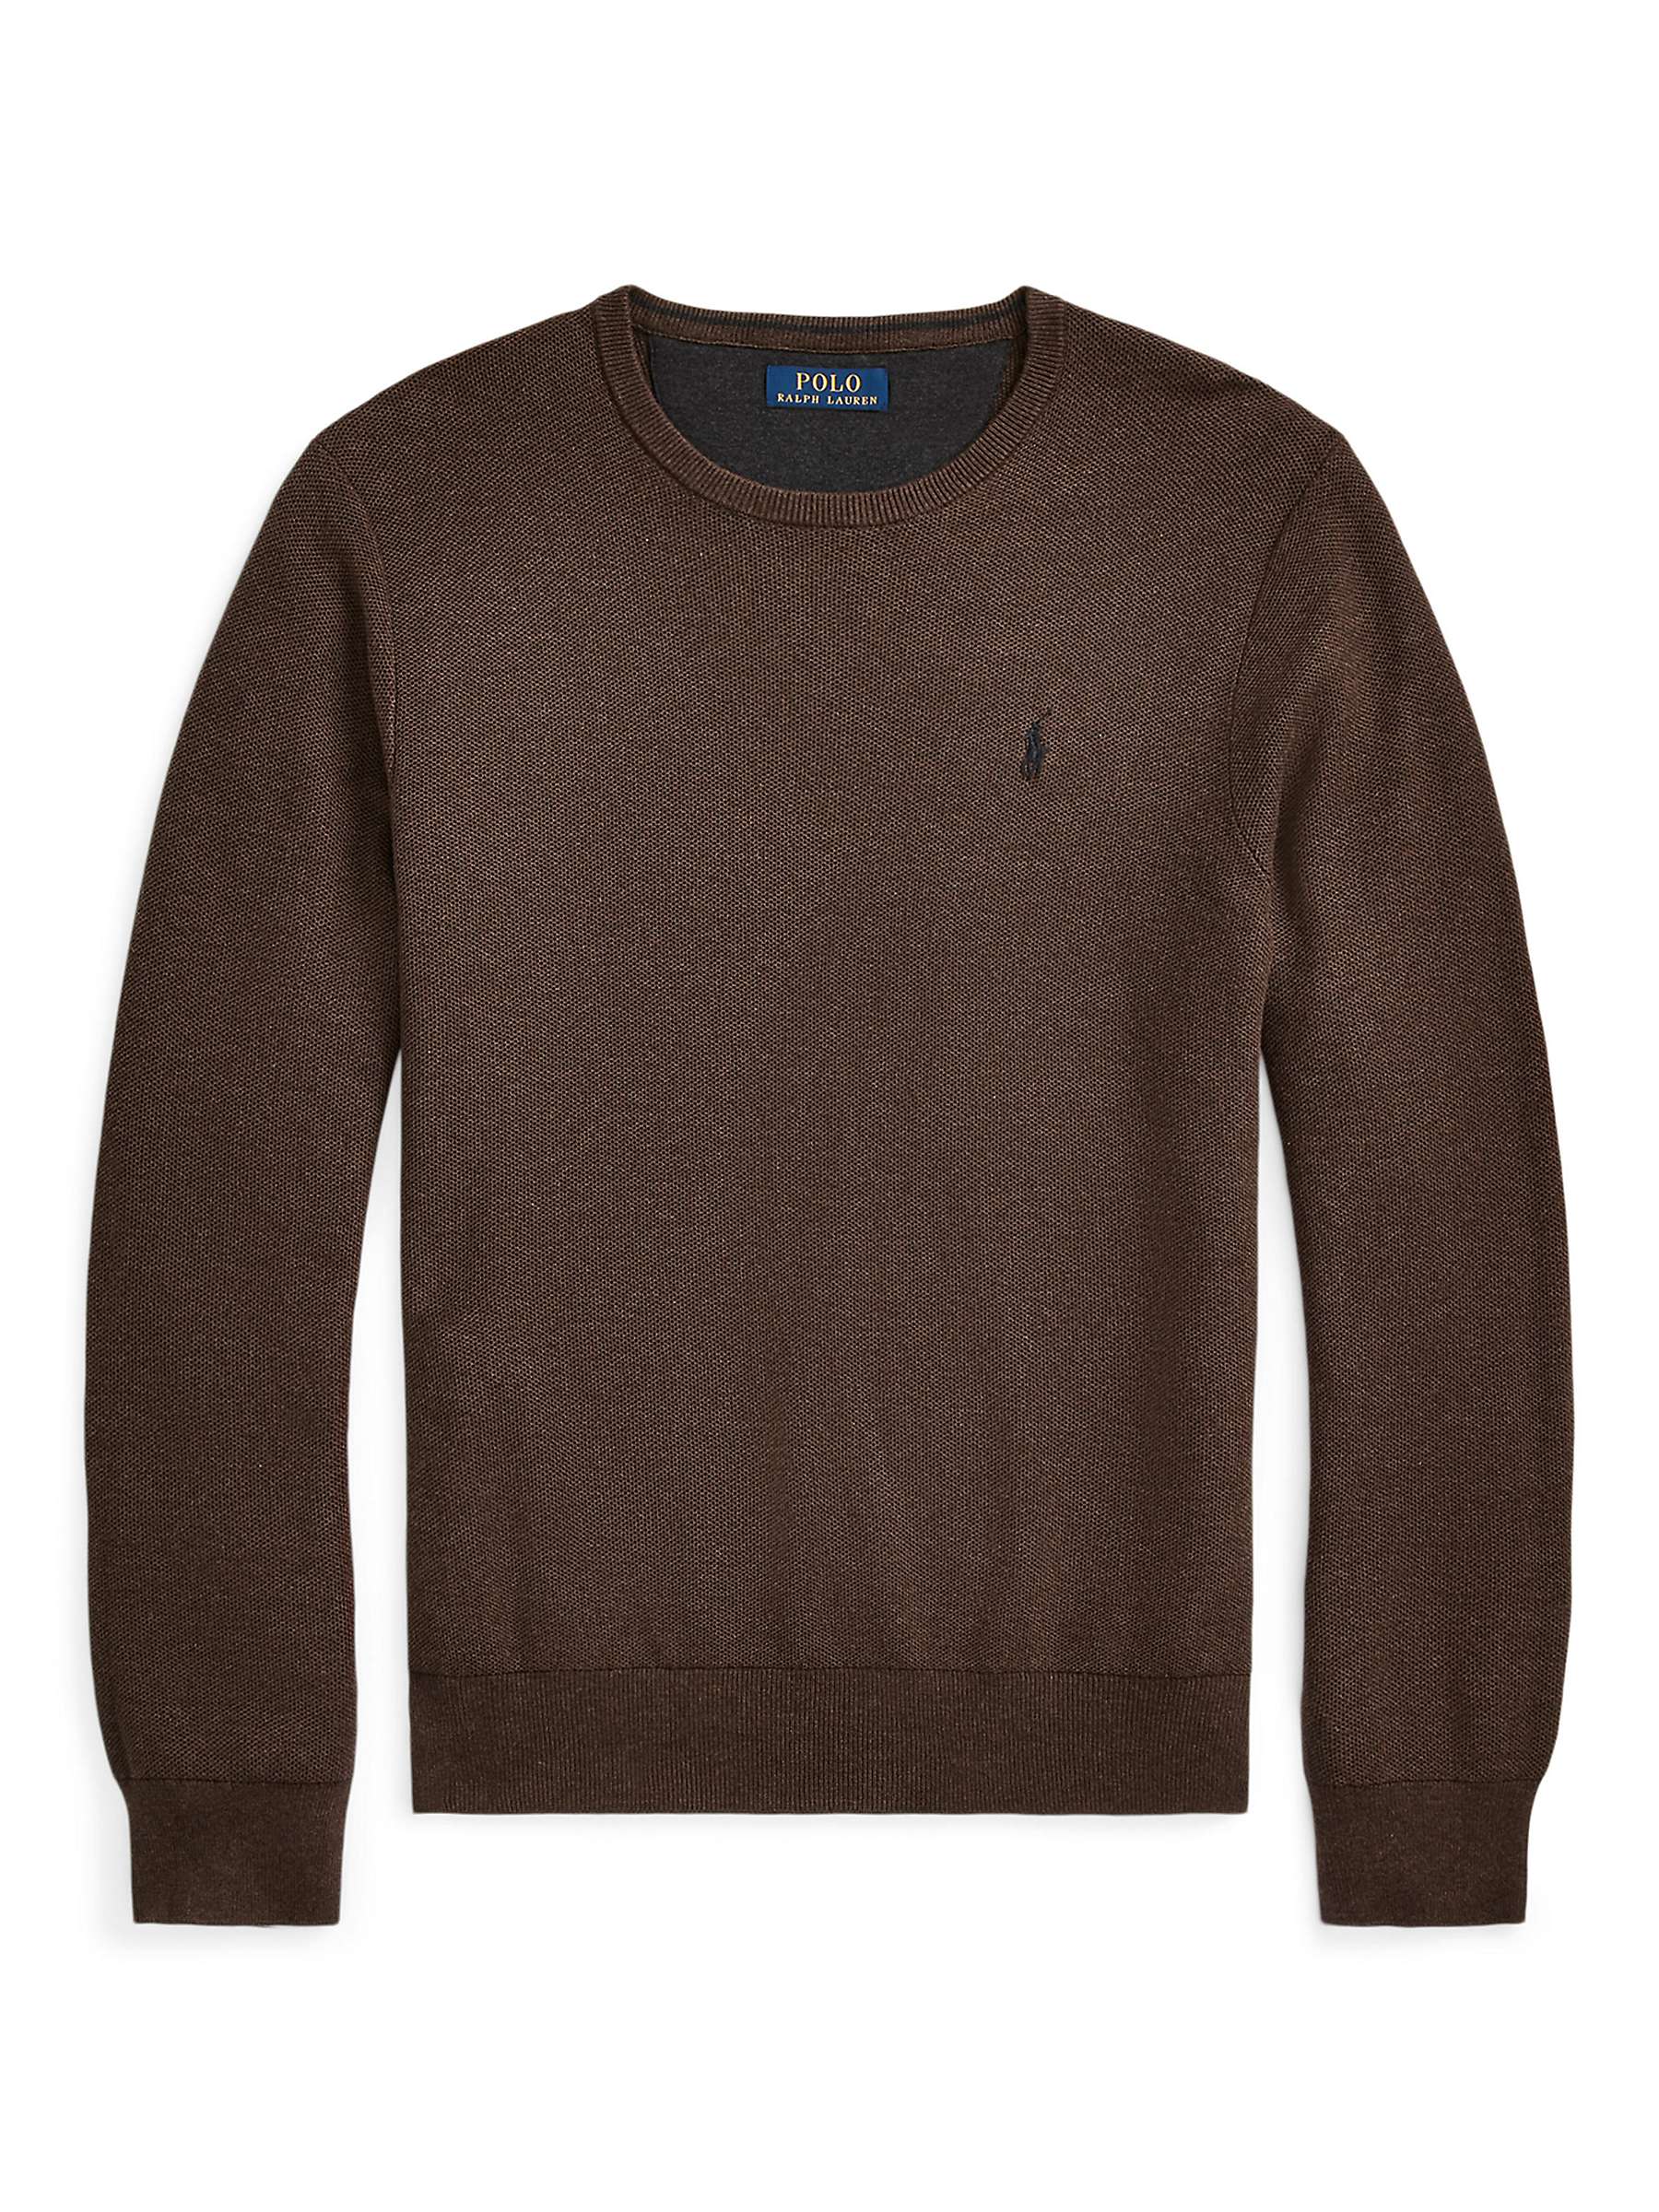 Buy Polo Ralph Lauren Cotton Crew Neck Sweatshirt, Brown Online at johnlewis.com